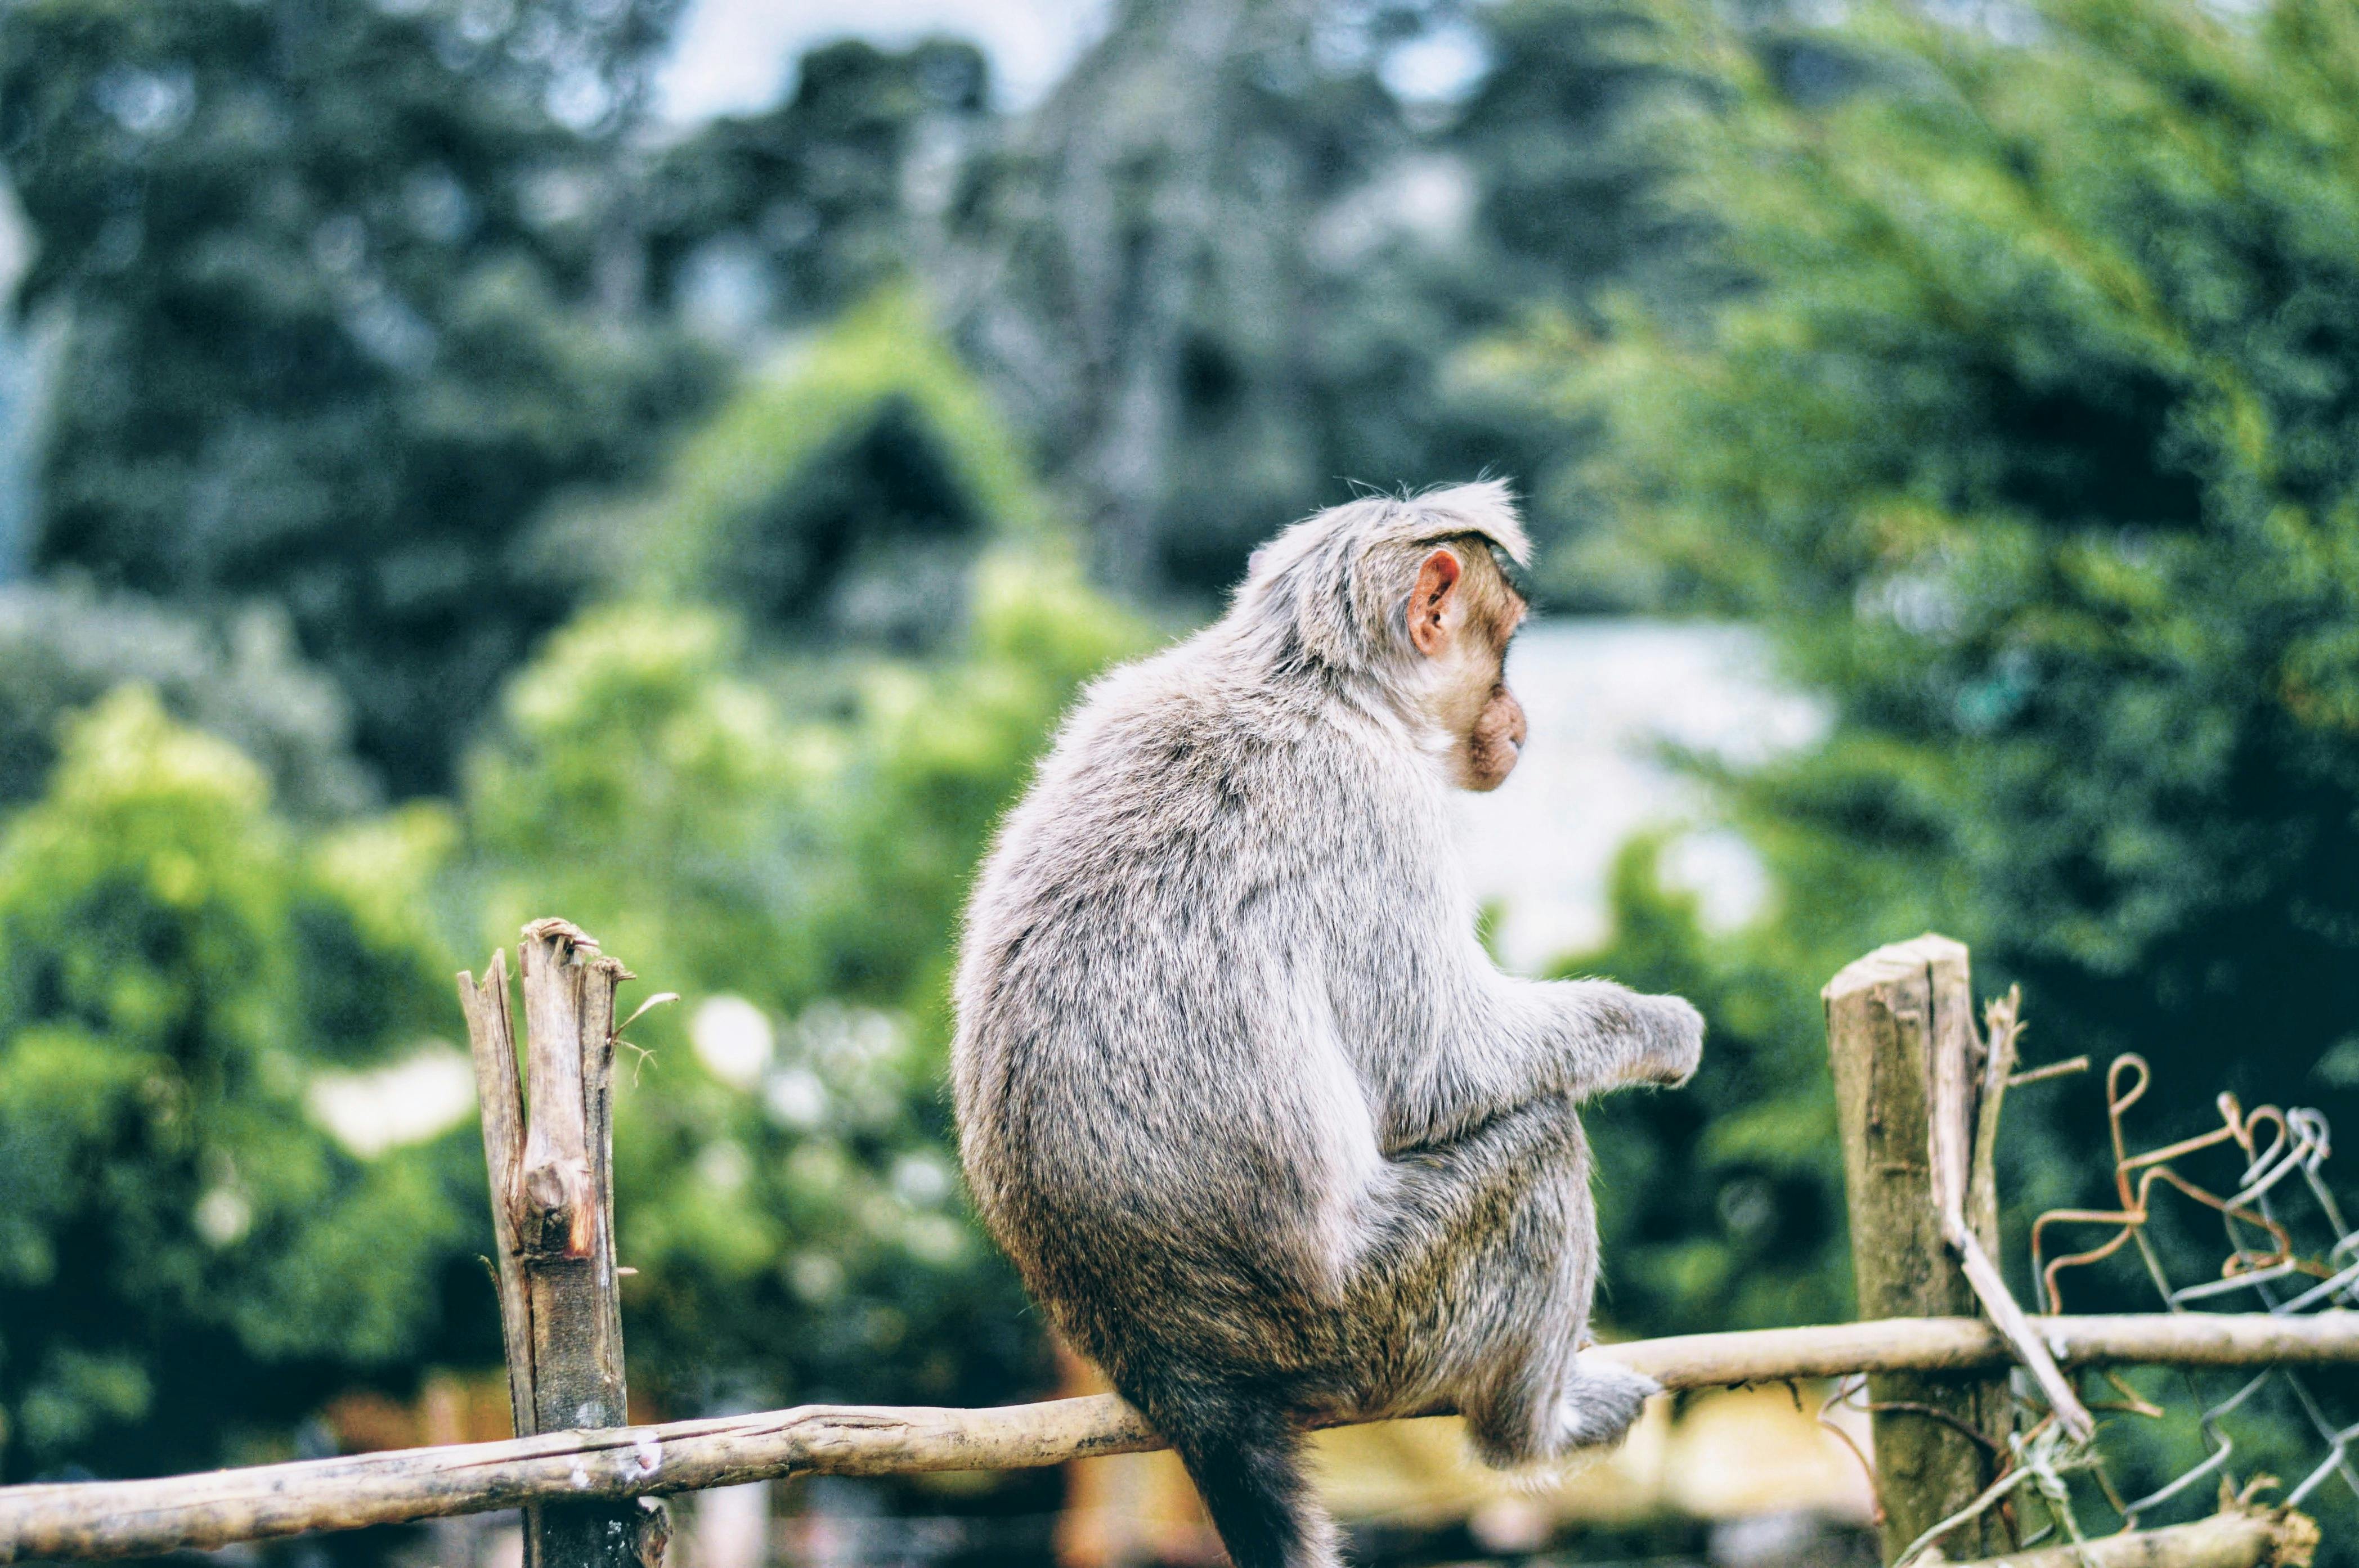  Foto  stok gratis tentang alam  bayi monyet berbayang